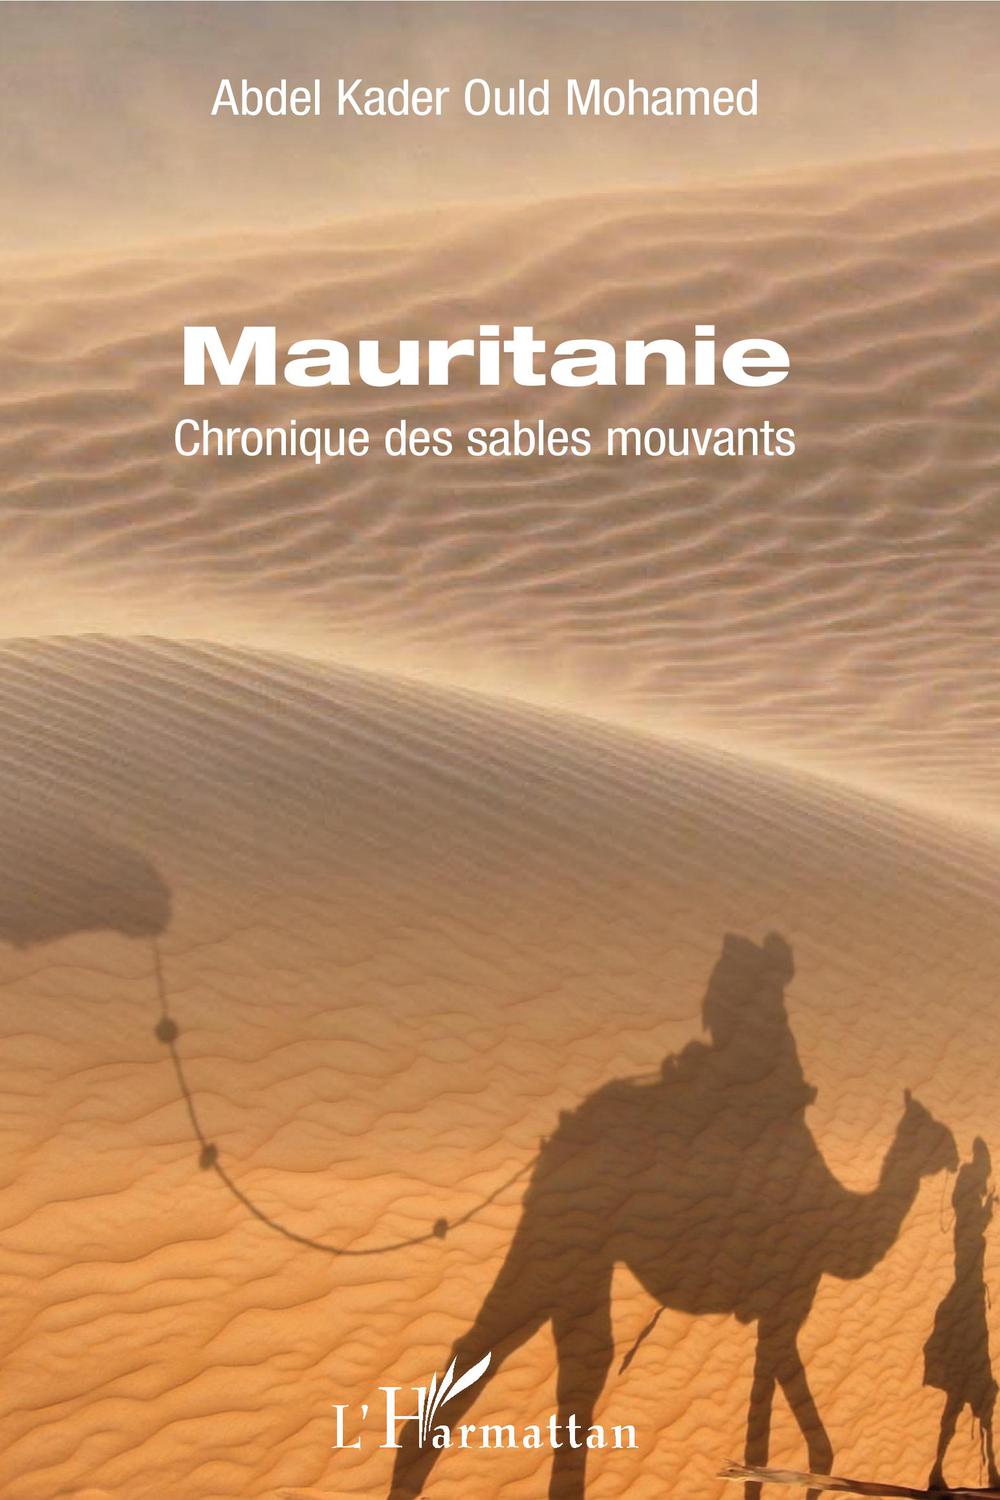 Mauritanie - Abdel Kader Ould Mohamed